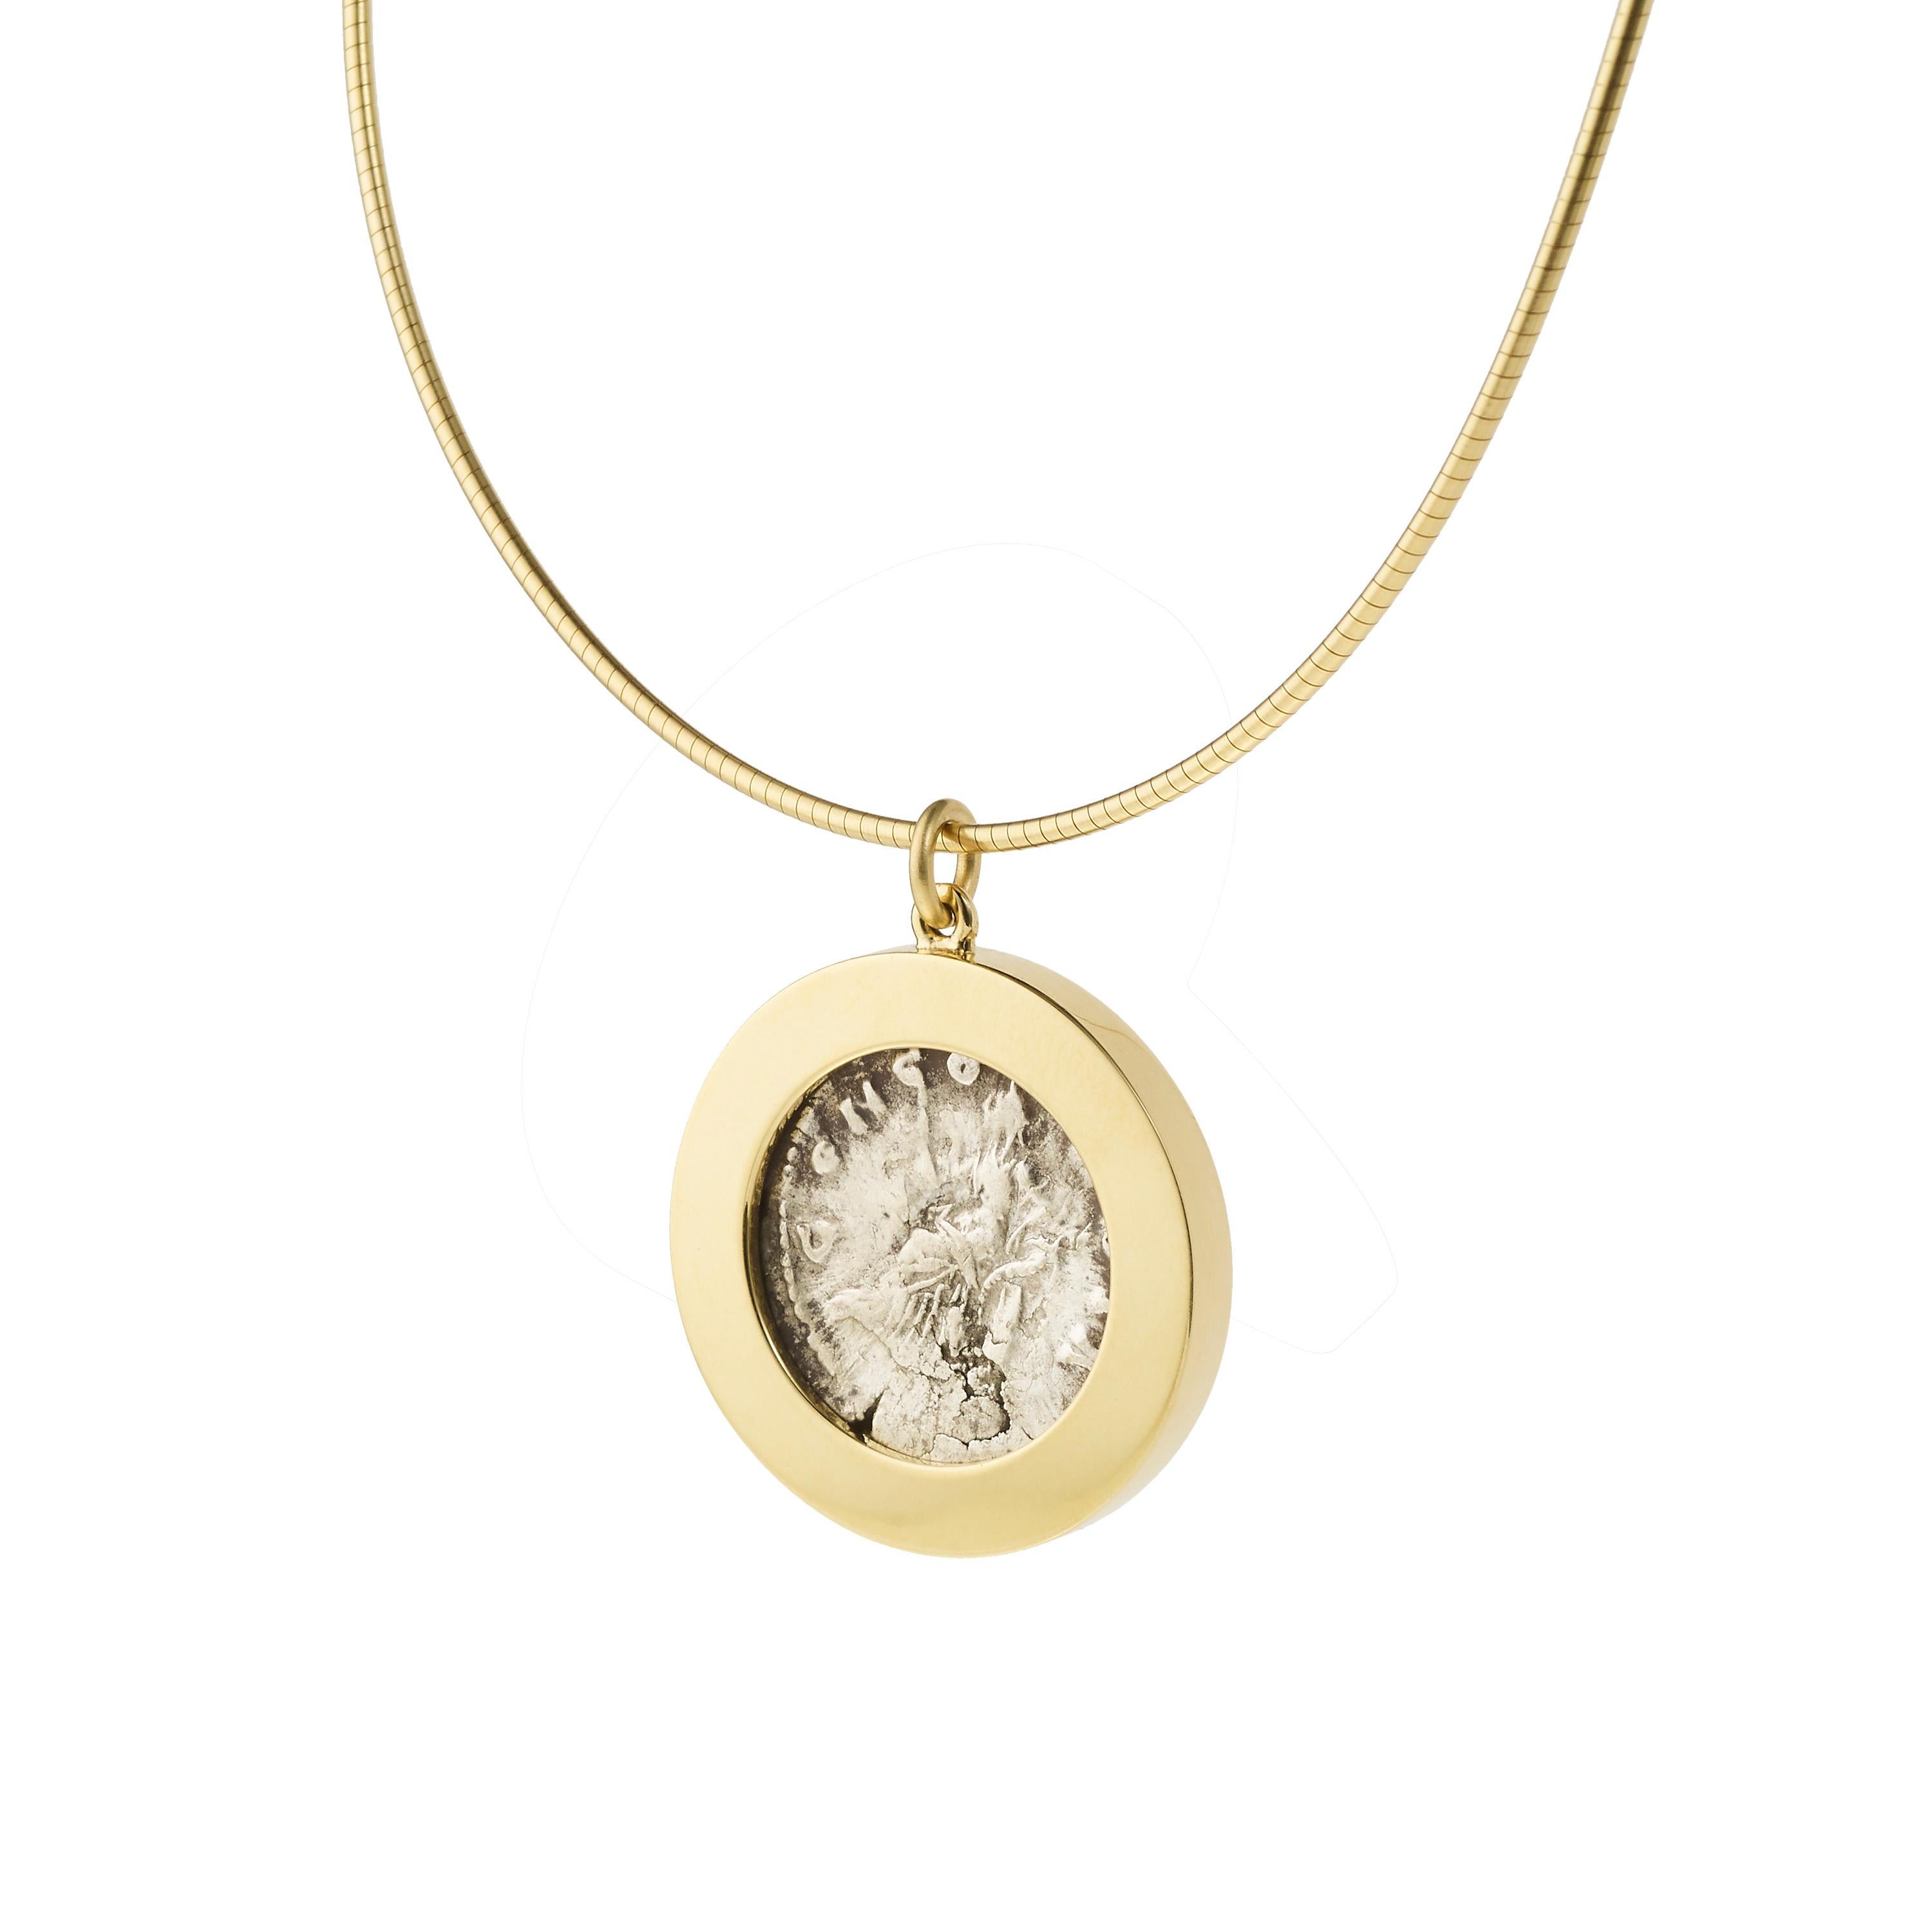 Victoria Strigini (geb. 1991)

Zeitgenössische Halskette mit Anhänger aus 18 Karat Gelbgold mit einer römischen Silbermünze aus den Jahren 161-180 n. Chr., die die Kaiserin Faustina, die Gemahlin von Marcus Aurelius, darstellt. Die Vorderseite der